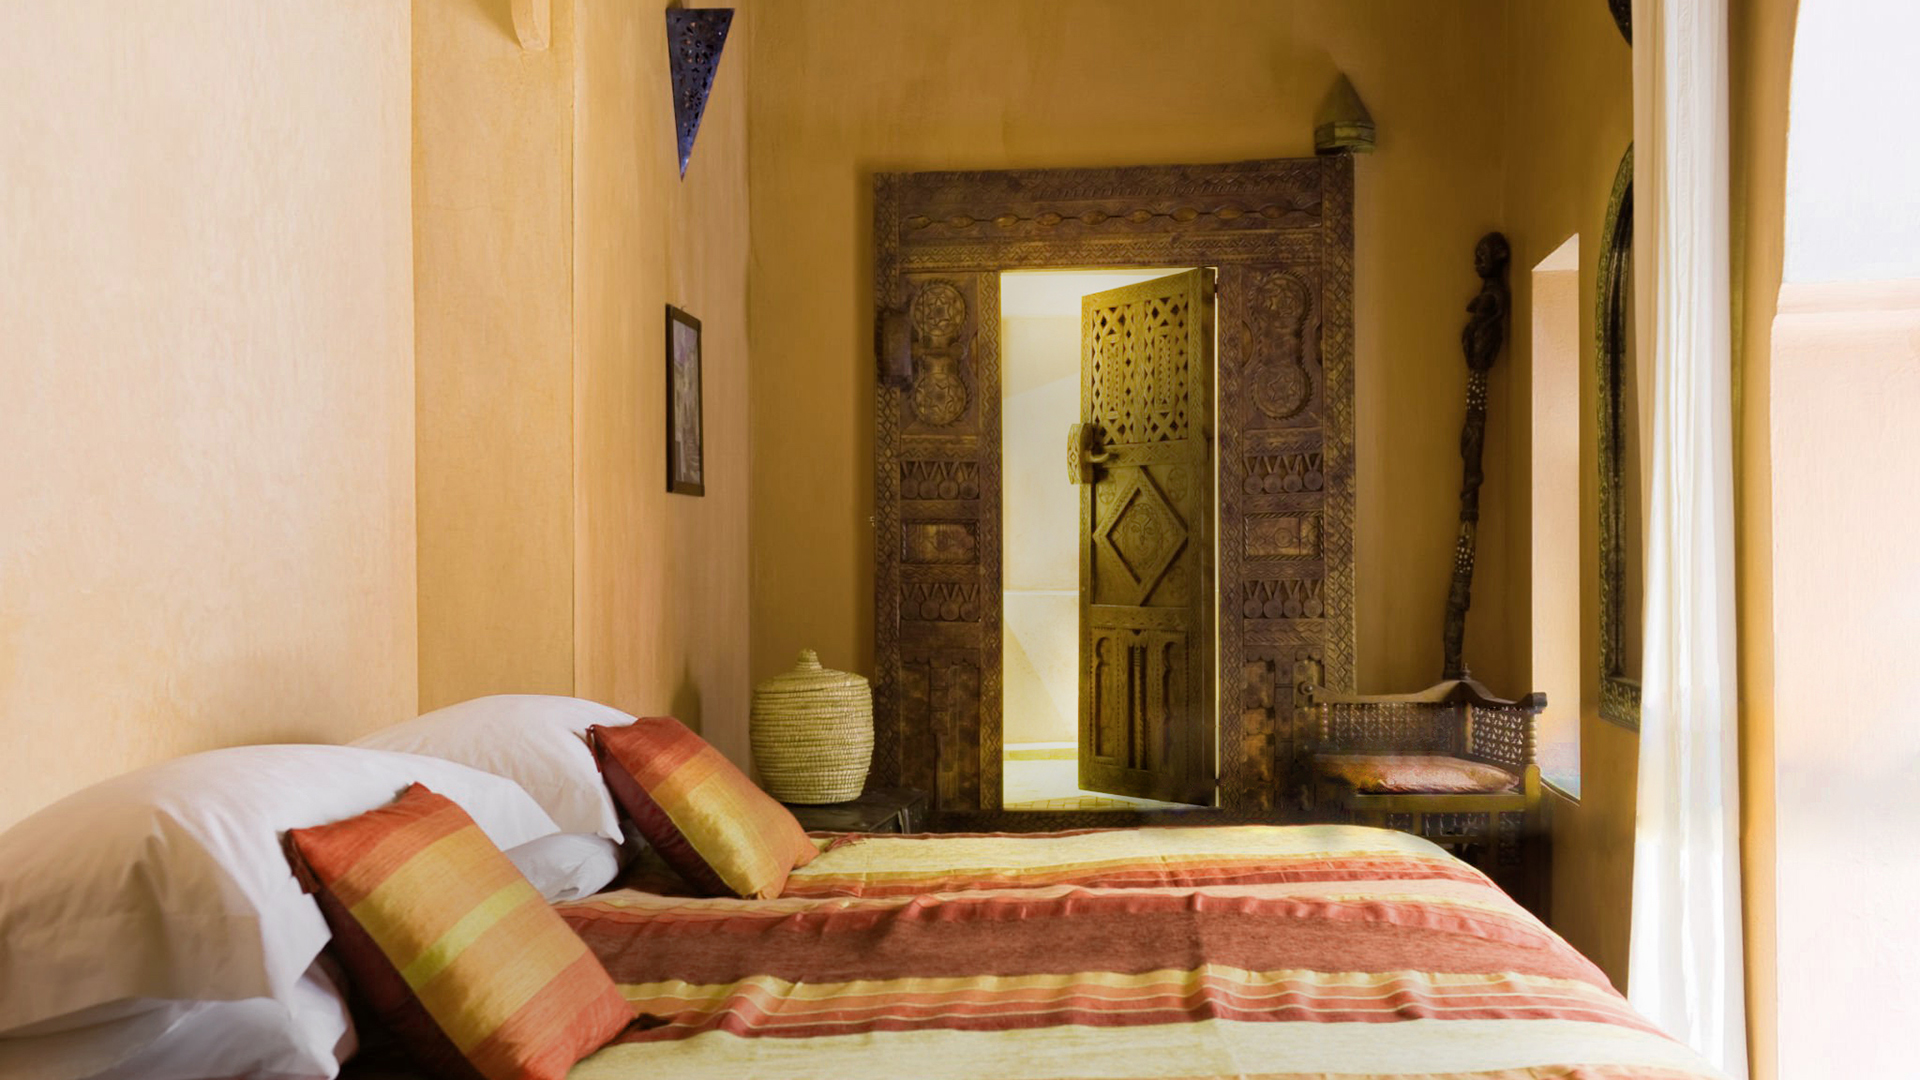 Soverom i arabisk stil med tadelakt på veggene